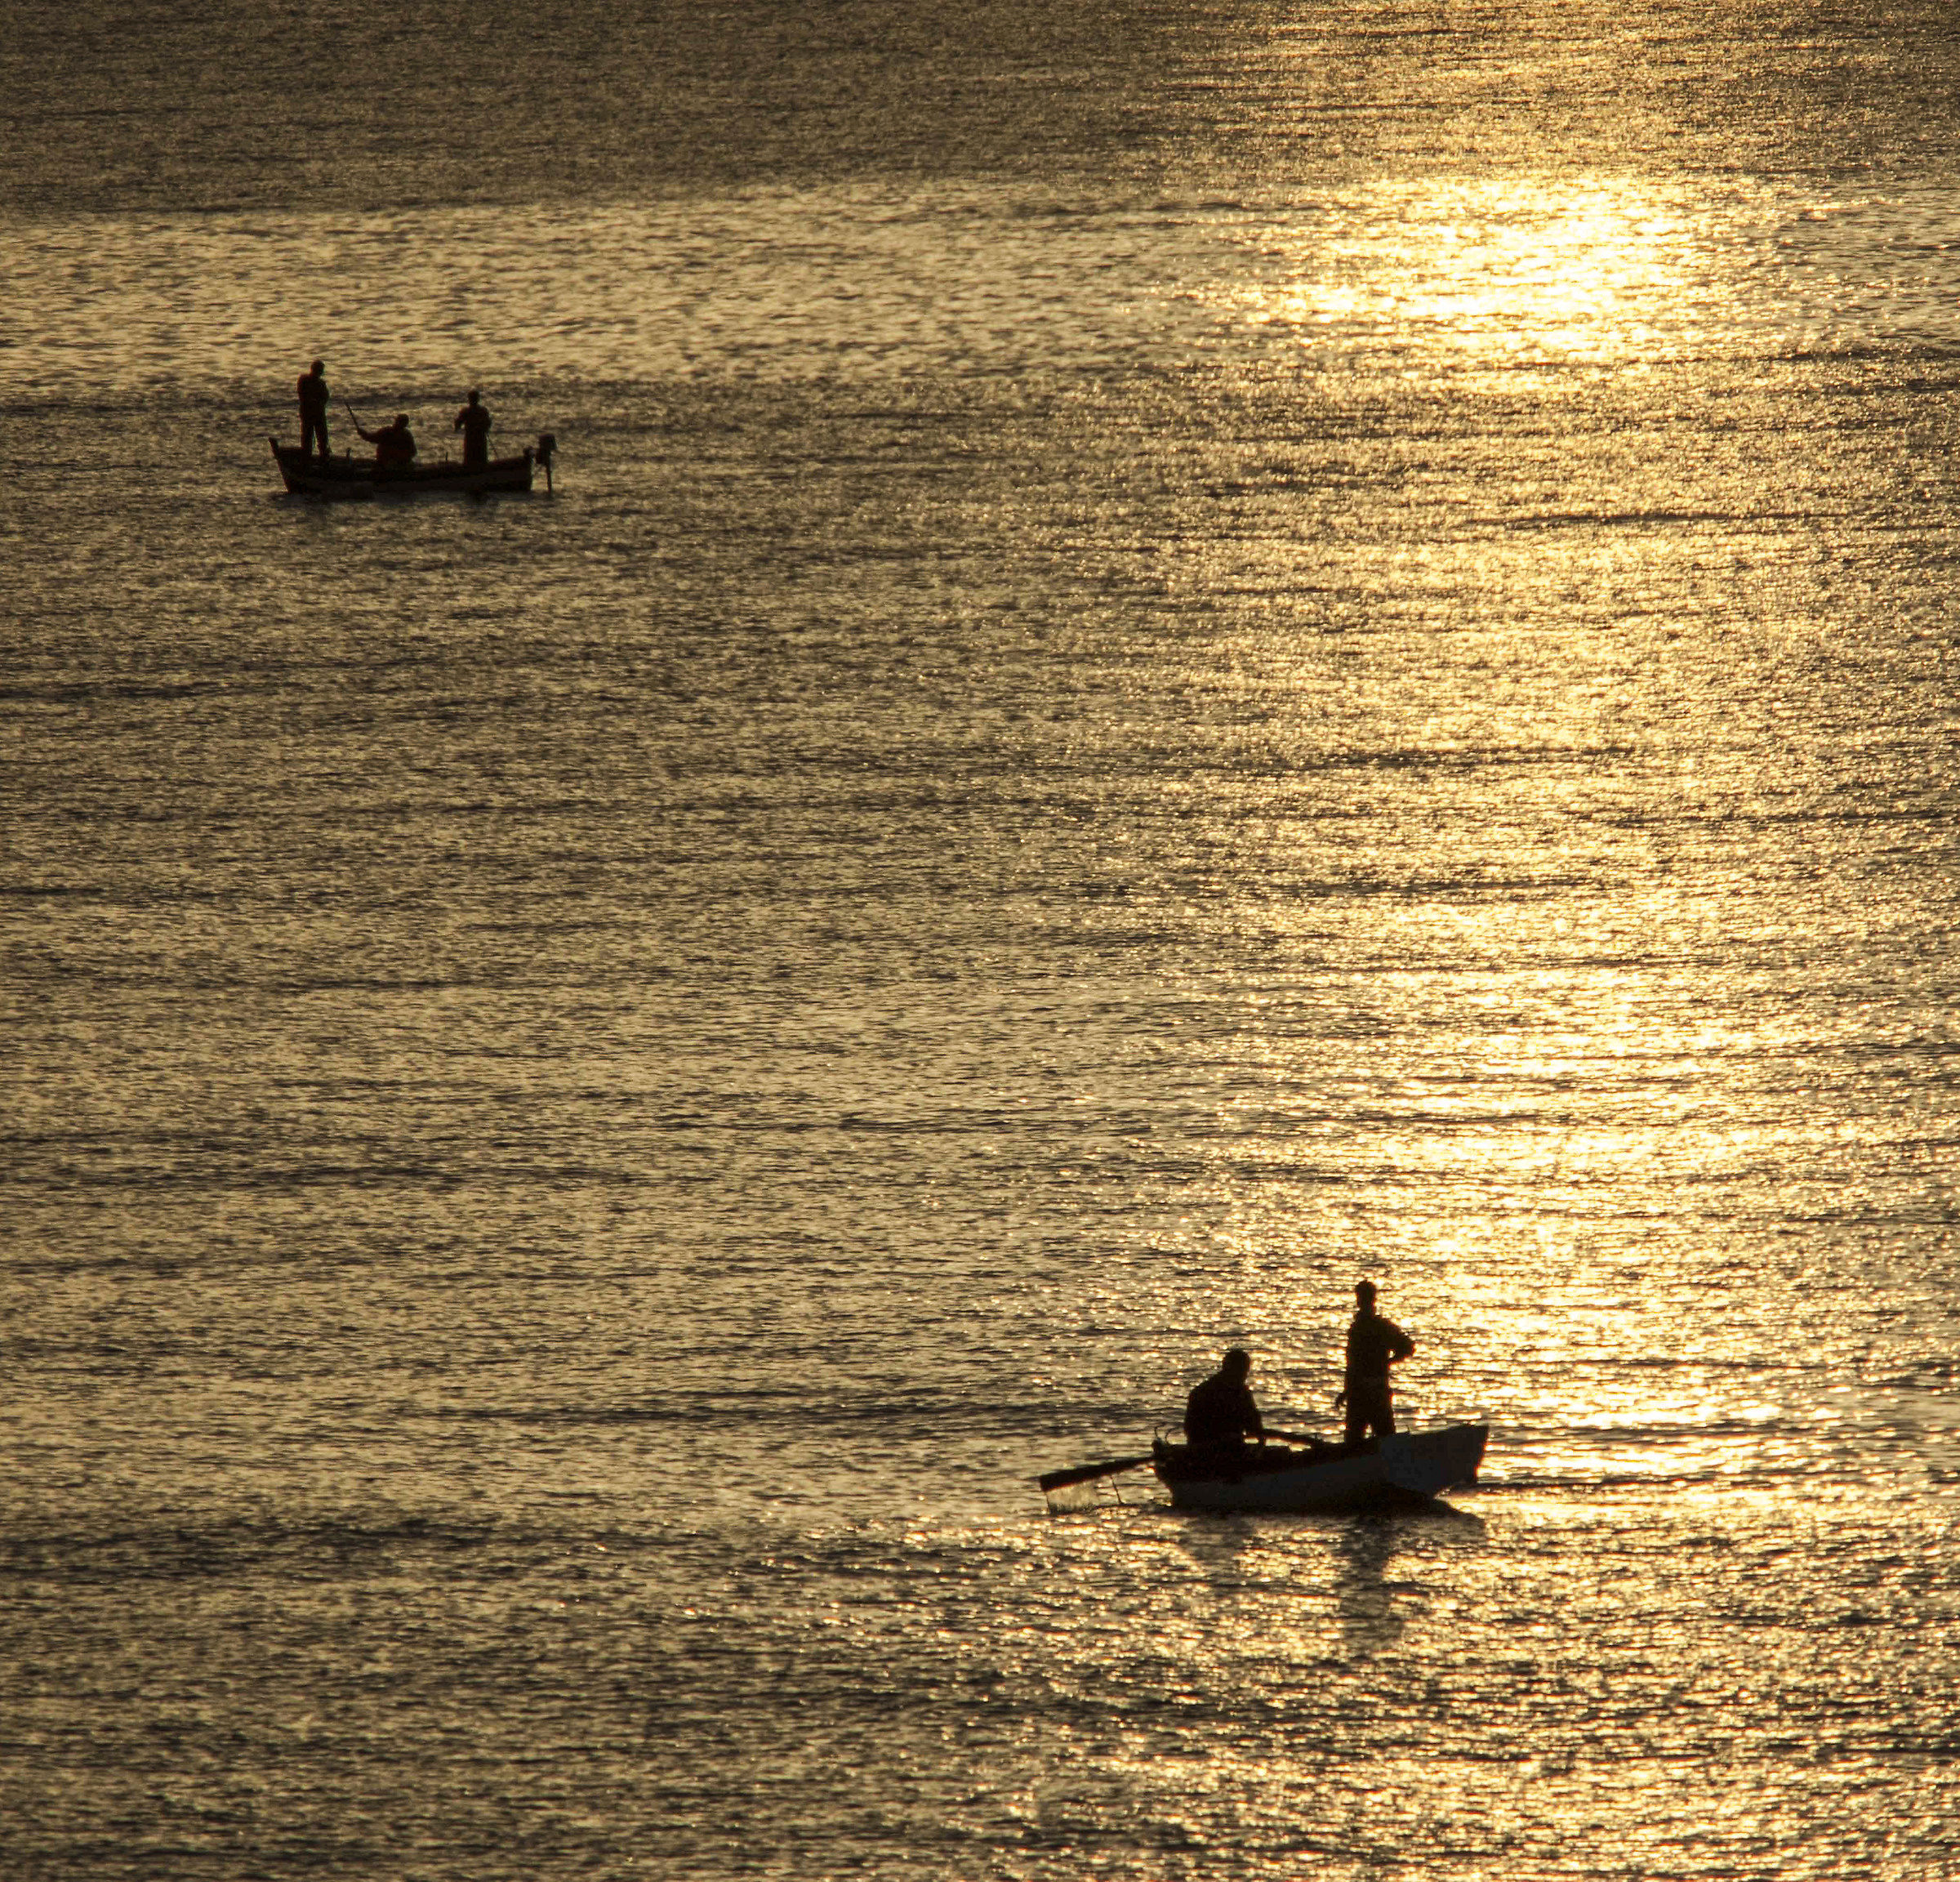 Fishing at dawn...